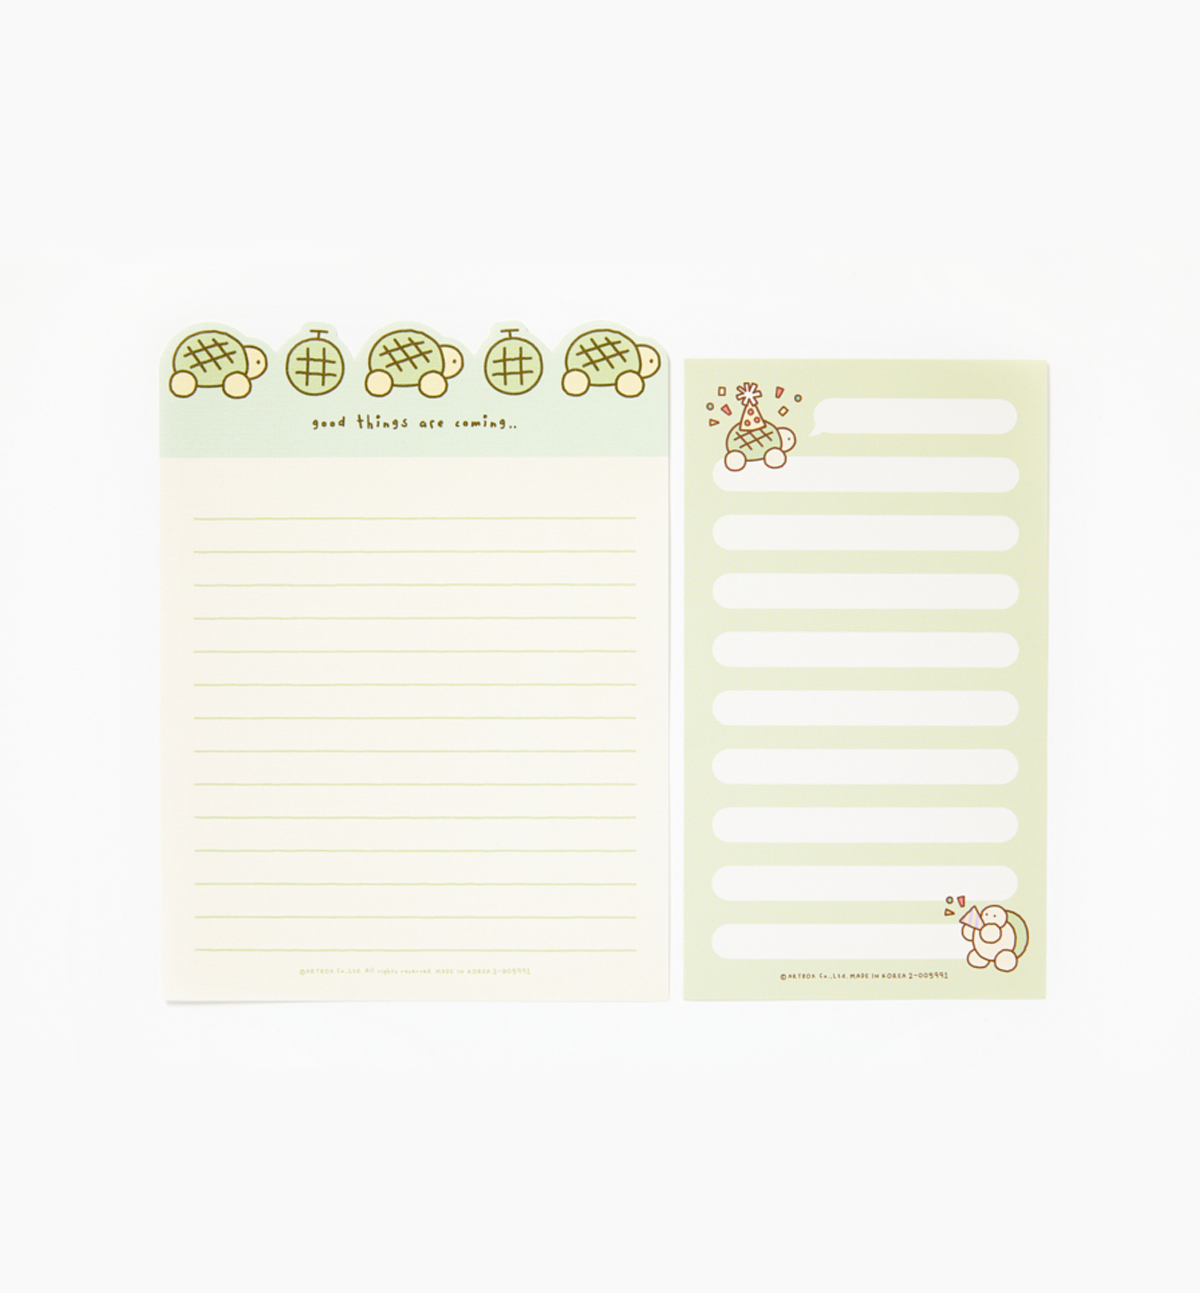 Cute Turtle Letters & Envelopes Set